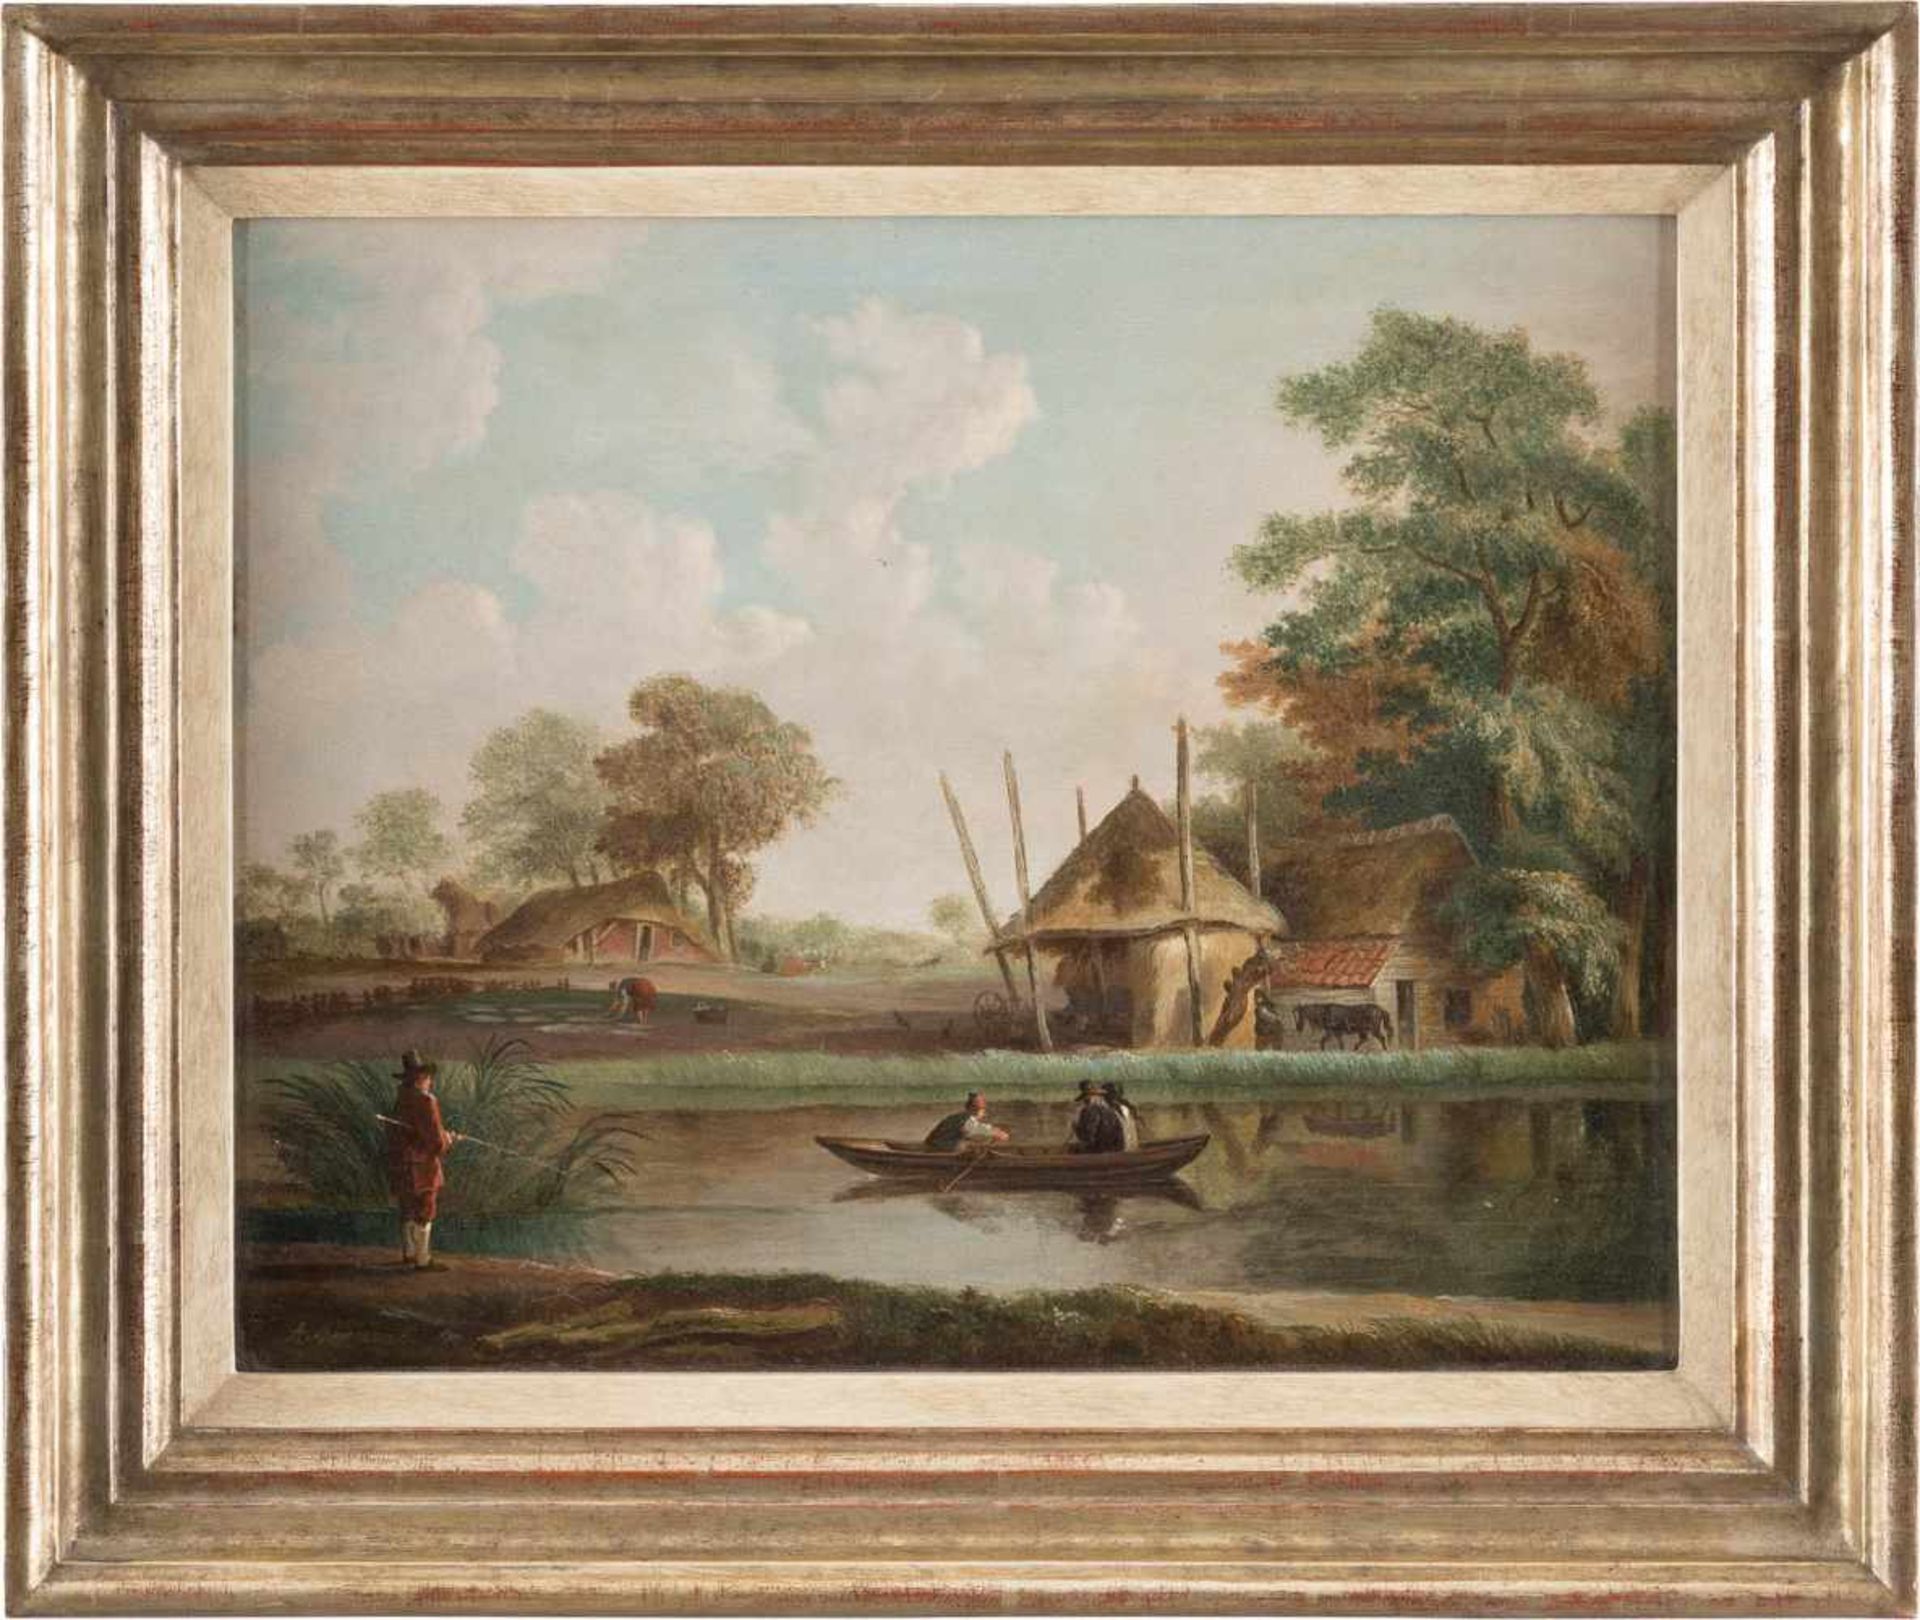 ANDRIES VERMEULEN1763 Dordrecht - 1814 AmsterdamFLUSSLANDSCHAFT MIT BAUERNHÄUSERN UND RUDERBOOT Öl - Image 2 of 2